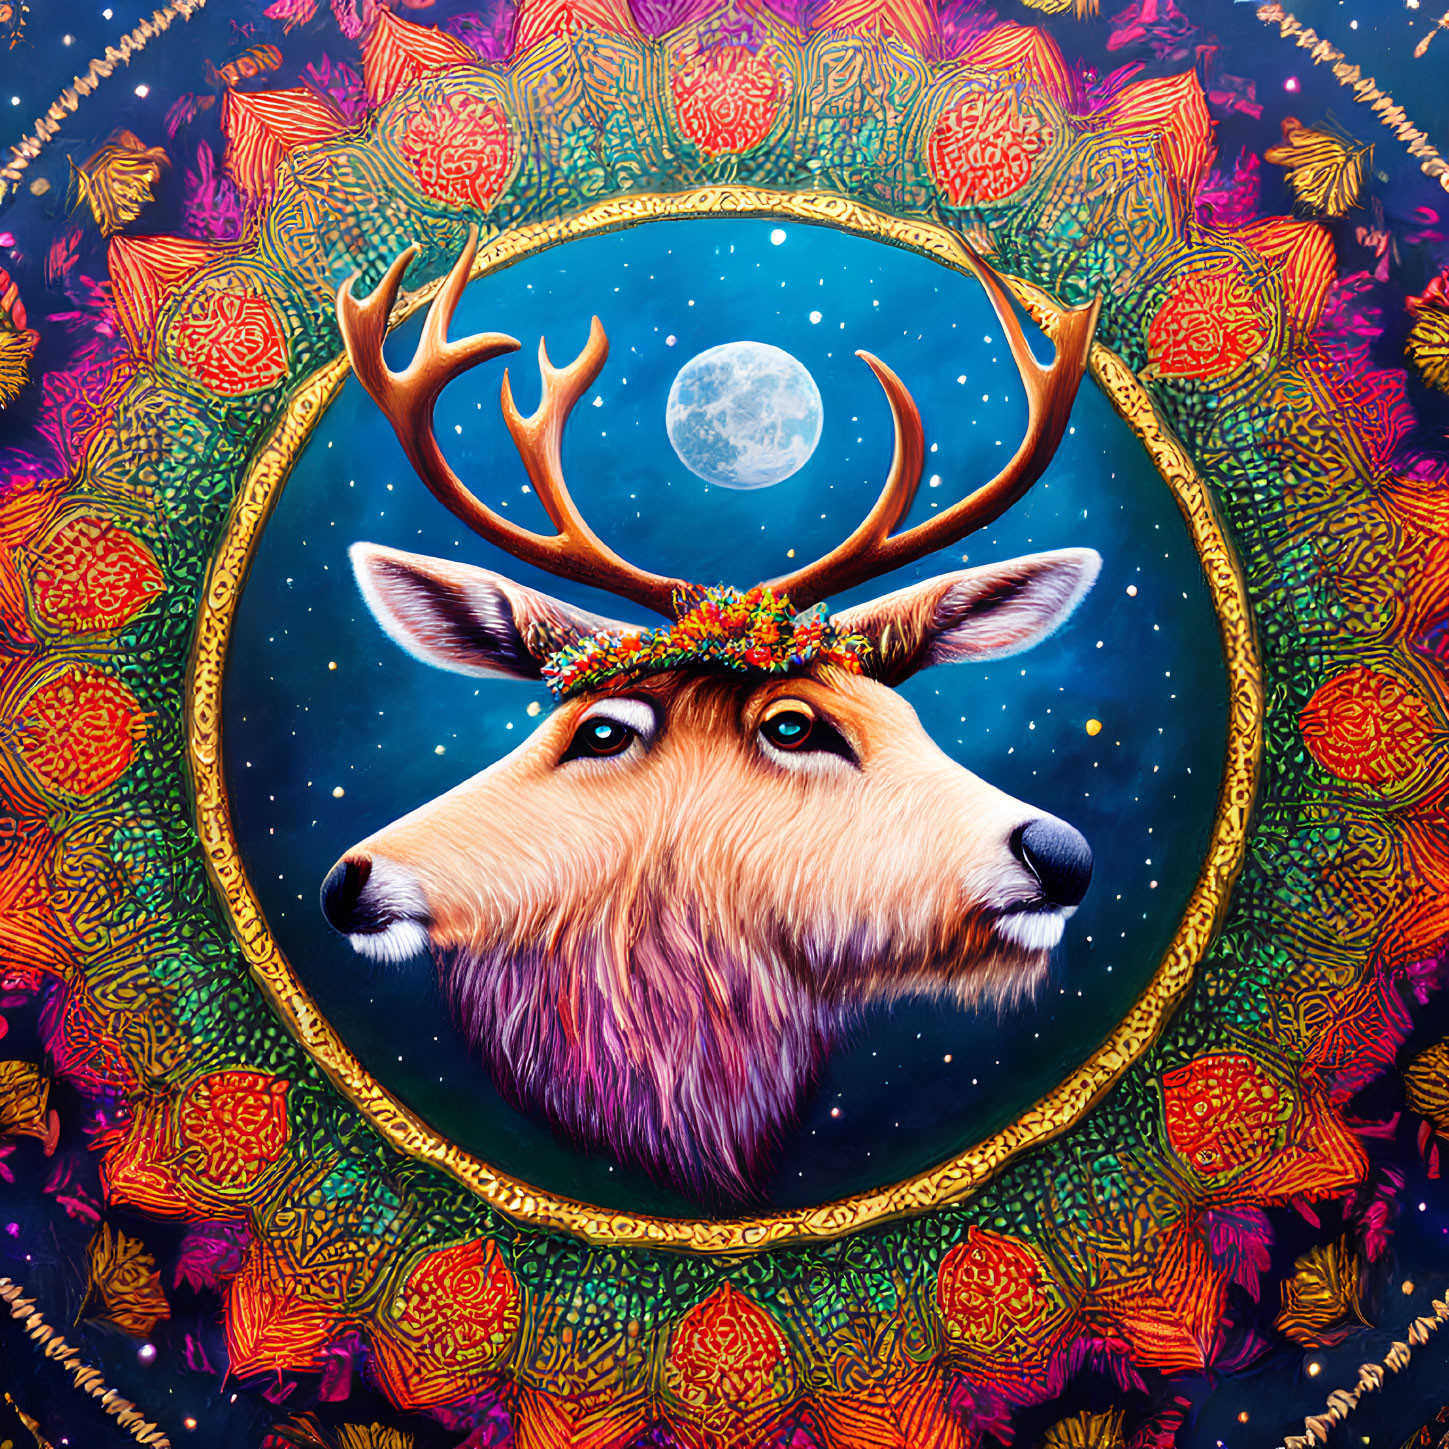 Colorful deer with ornate antlers in moonlit night scene.